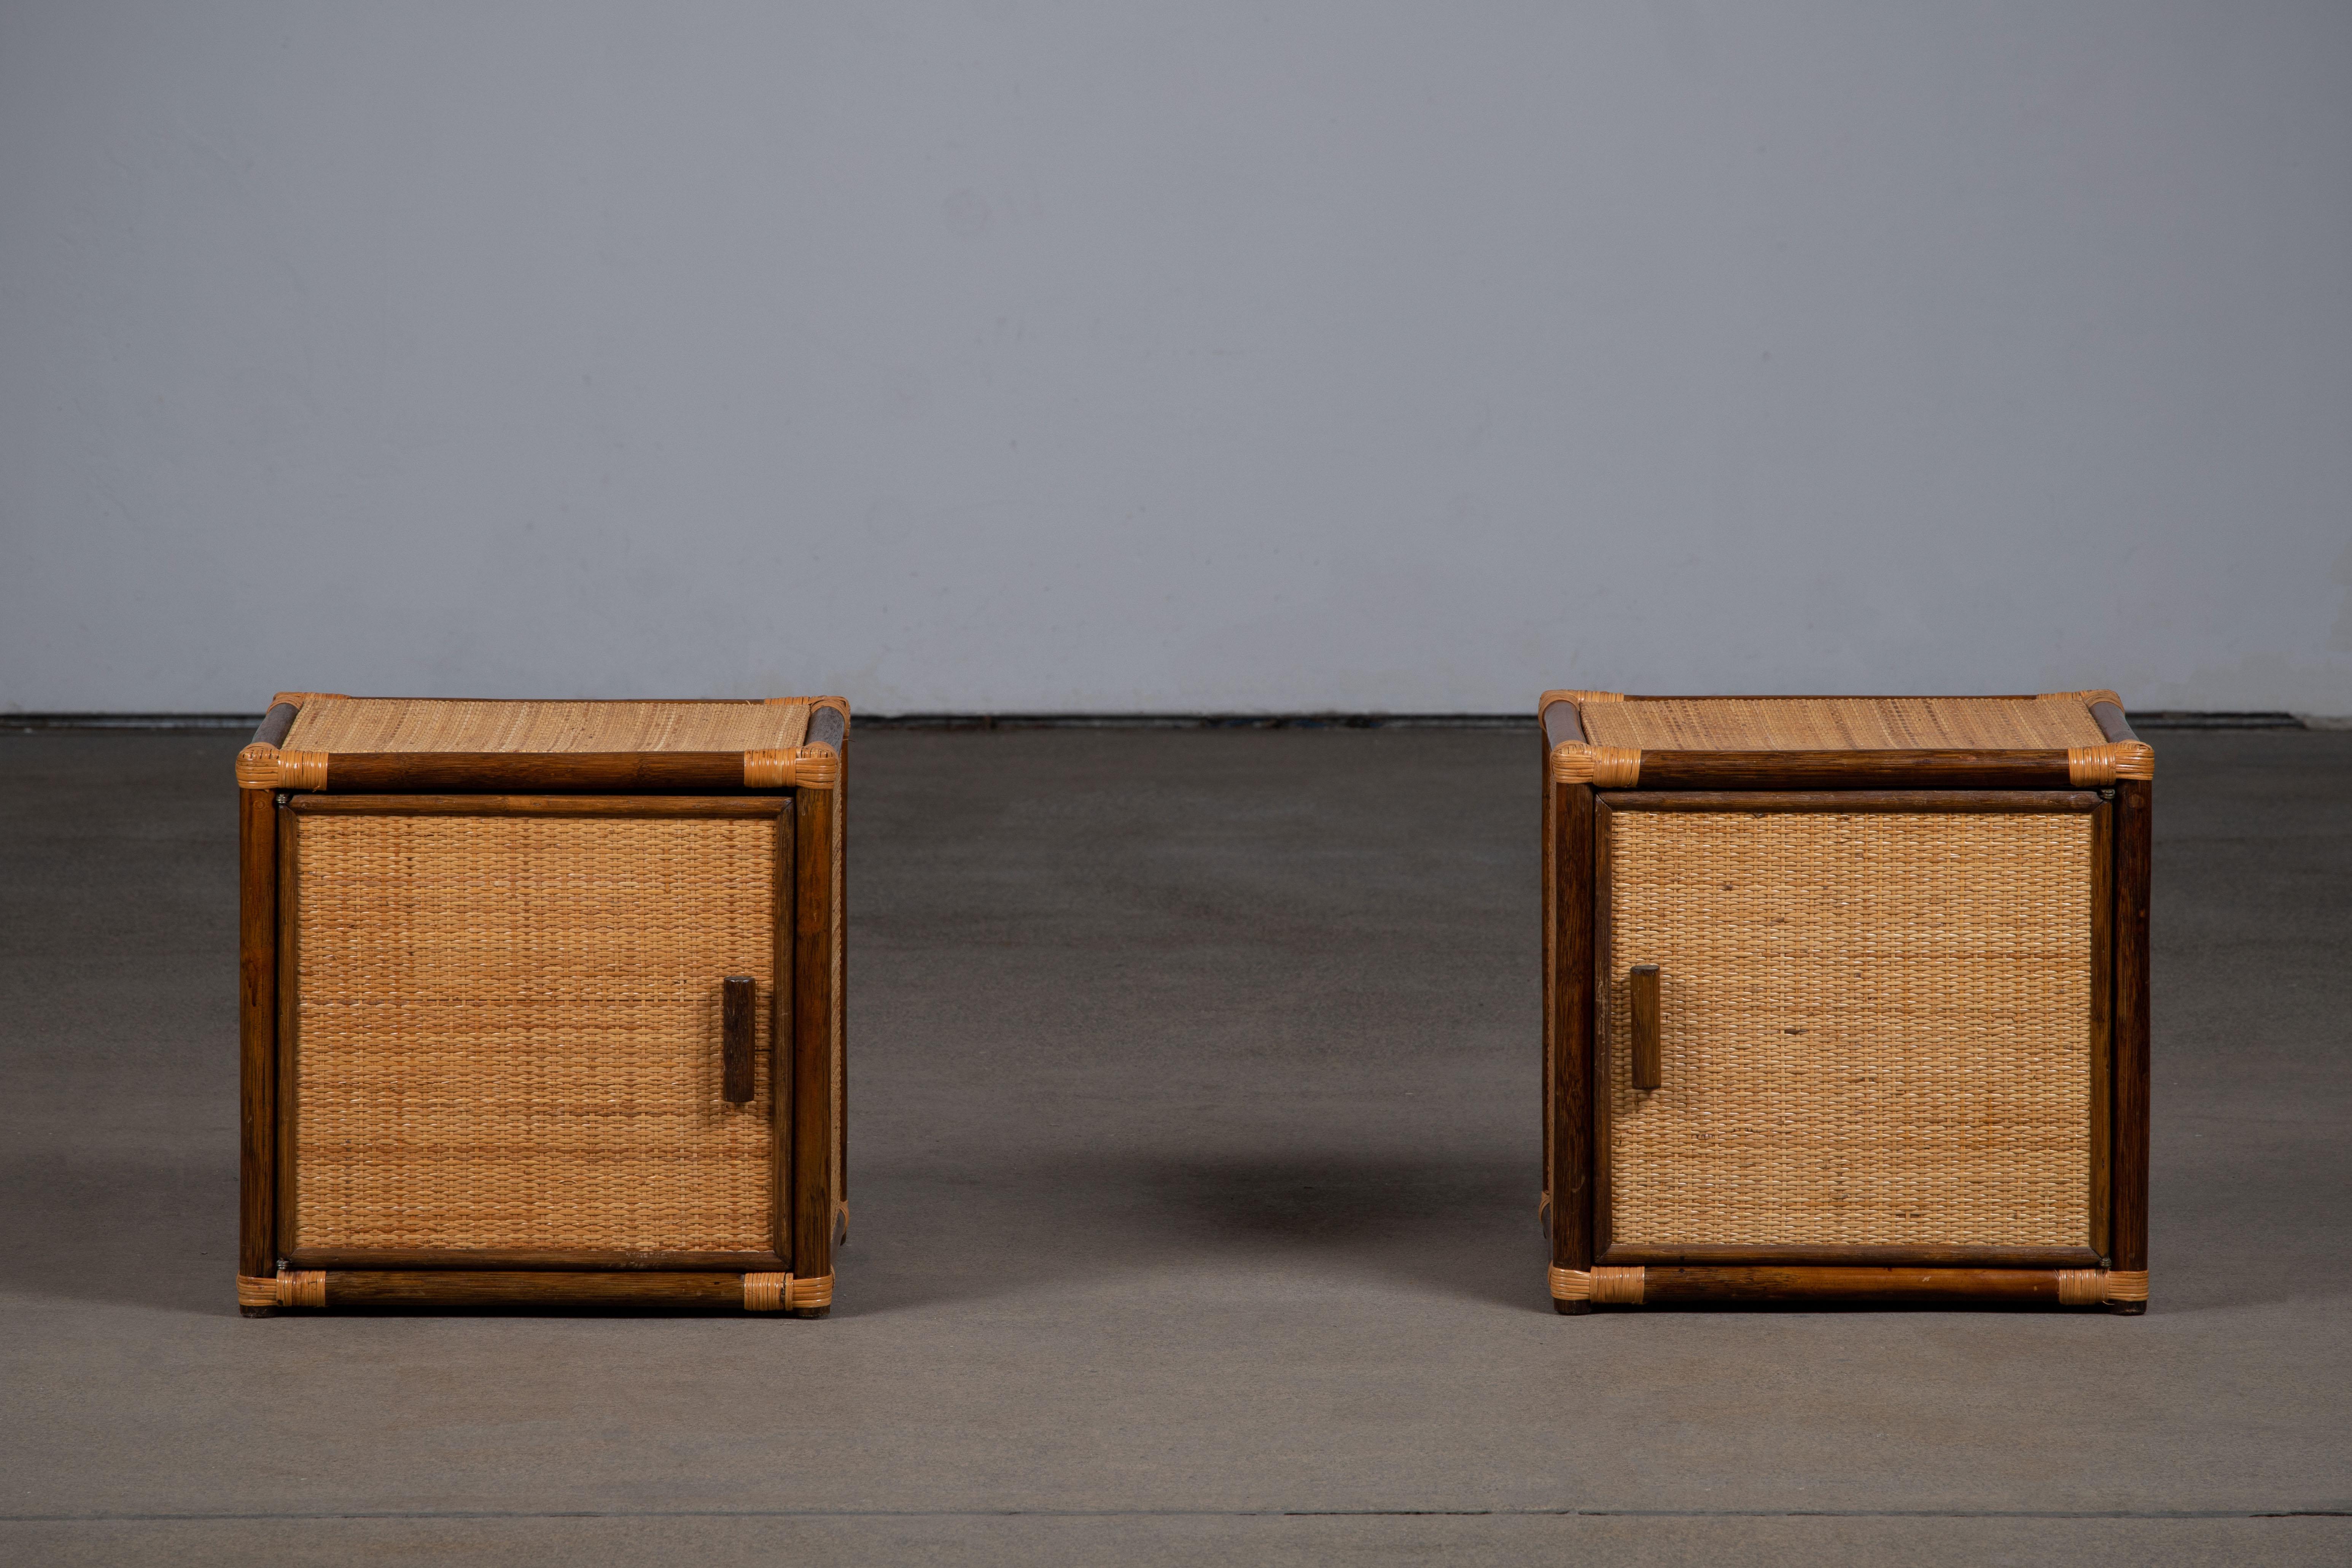 Amazing Mitte des Jahrhunderts Paar Bambus, Rattan einzigen Schublade Ende oder Beistelltisch. 
Dieses wunderschöne Stück wurde in den 1960er Jahren in Italien entworfen.

Ein fantastischer Artikel, der eine perfekte Ergänzung für ein Studio oder